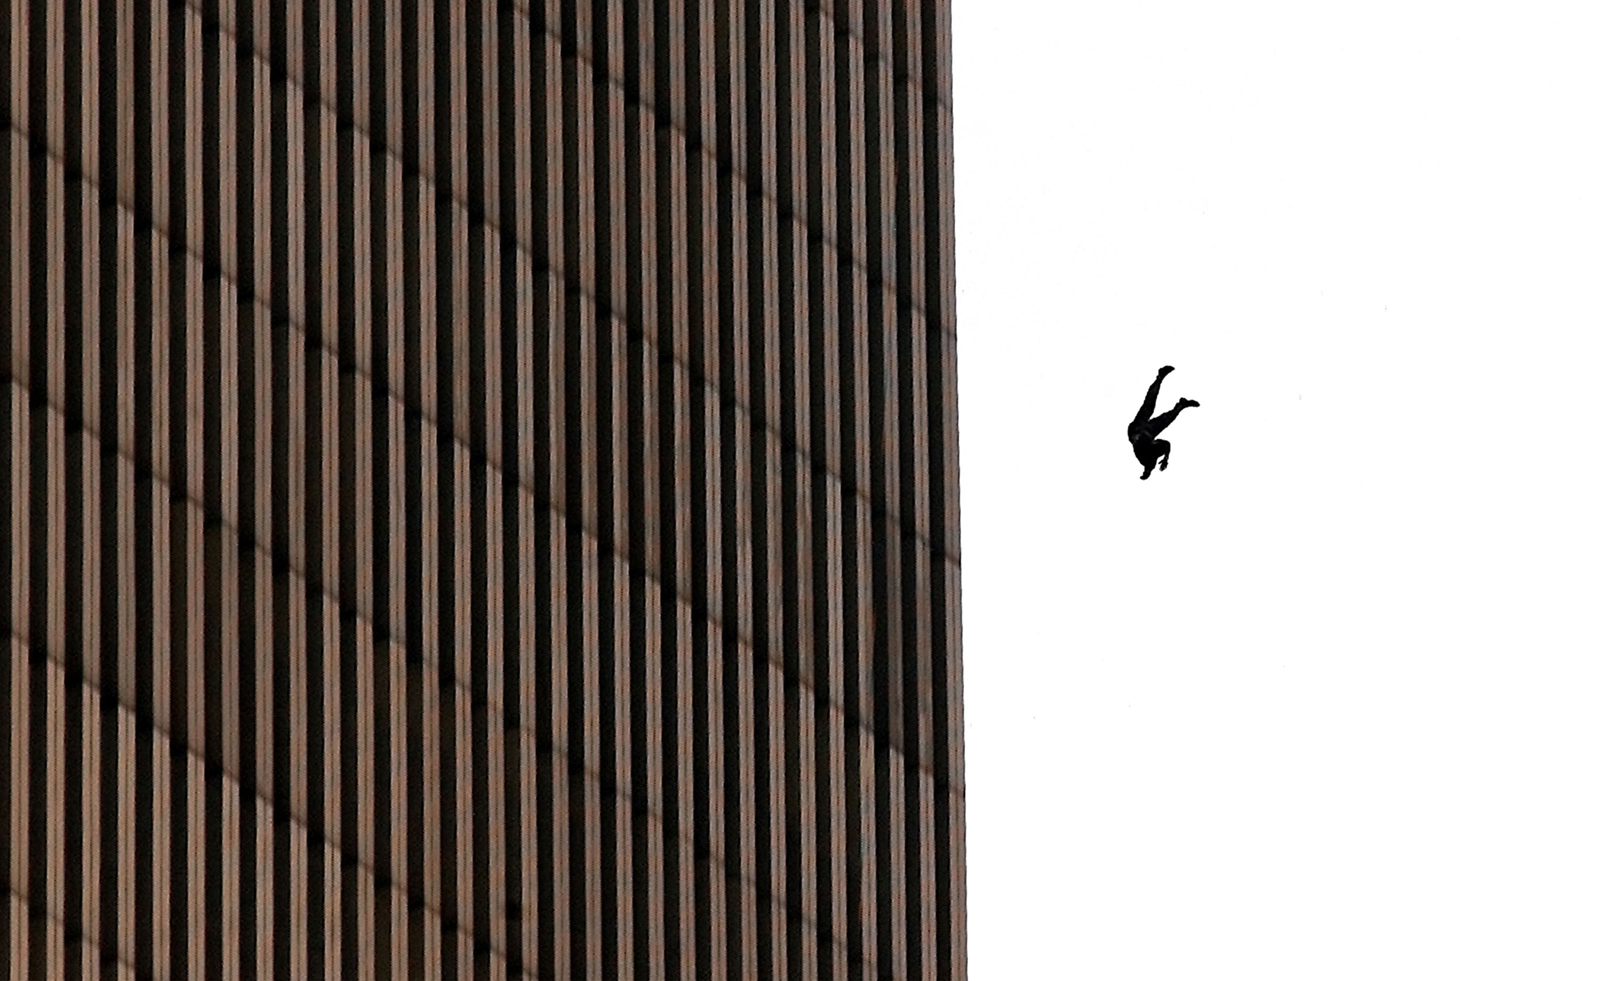 Jedna od najupečatljivijih fotografija napada. "The falling man", odnosno čovjek koji se baca je postao jedan od simbola napada 11. rujna. U bezizlaznoj situaciji, ovaj čovjek je u krajnjem očaju odlučio da će se radije baciti sa tornja, nego poginuti u njemu.